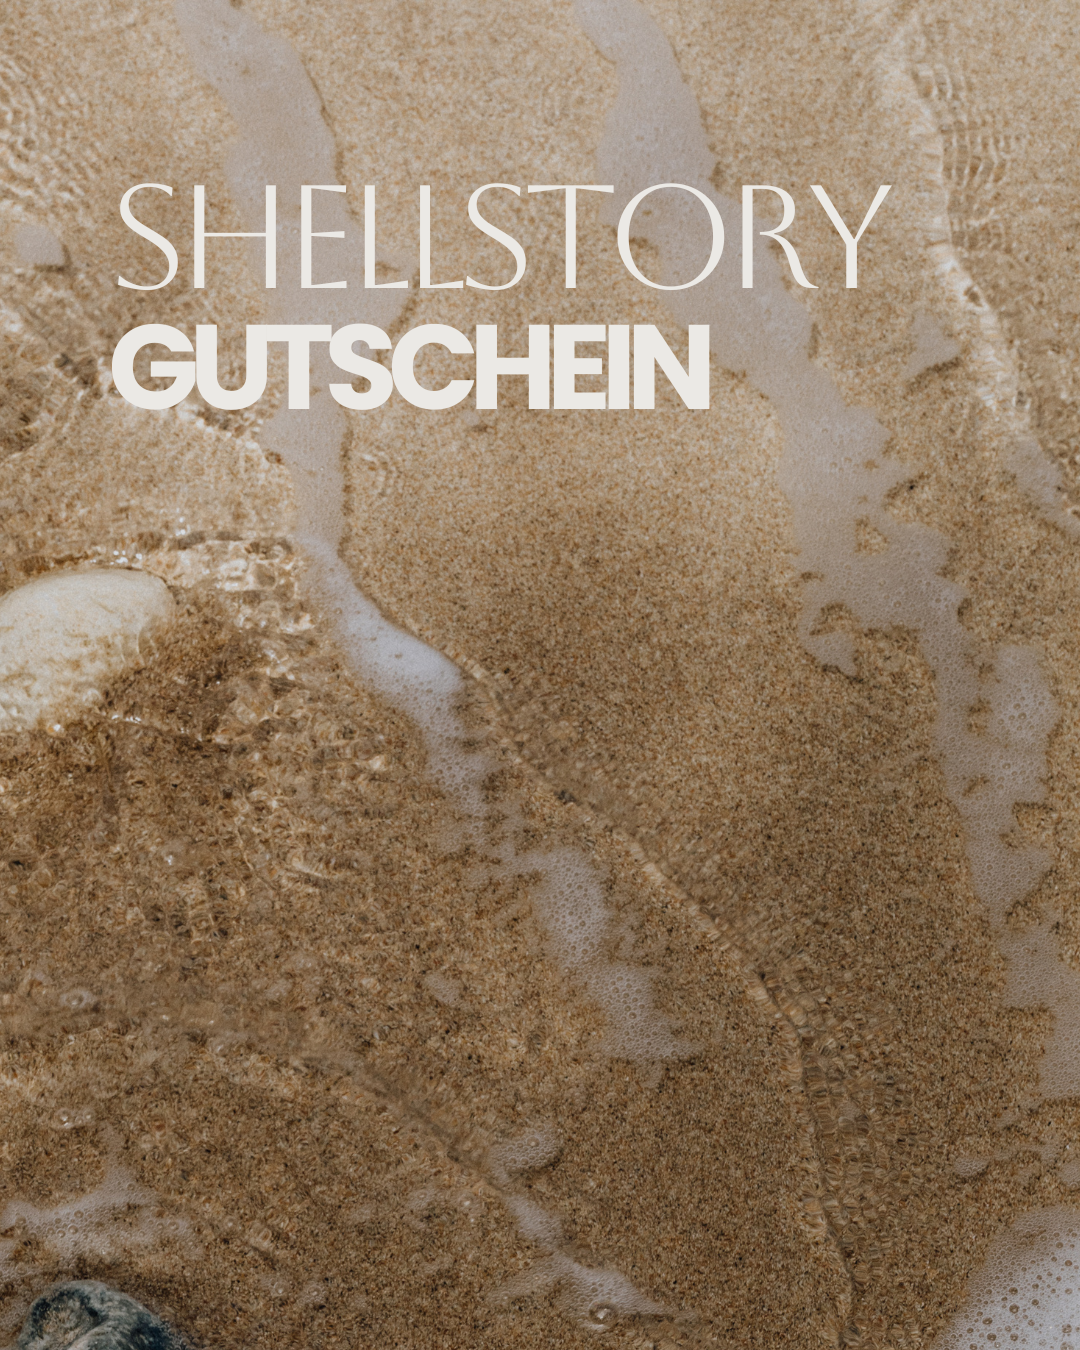 SHELLSTORY Gutscheine